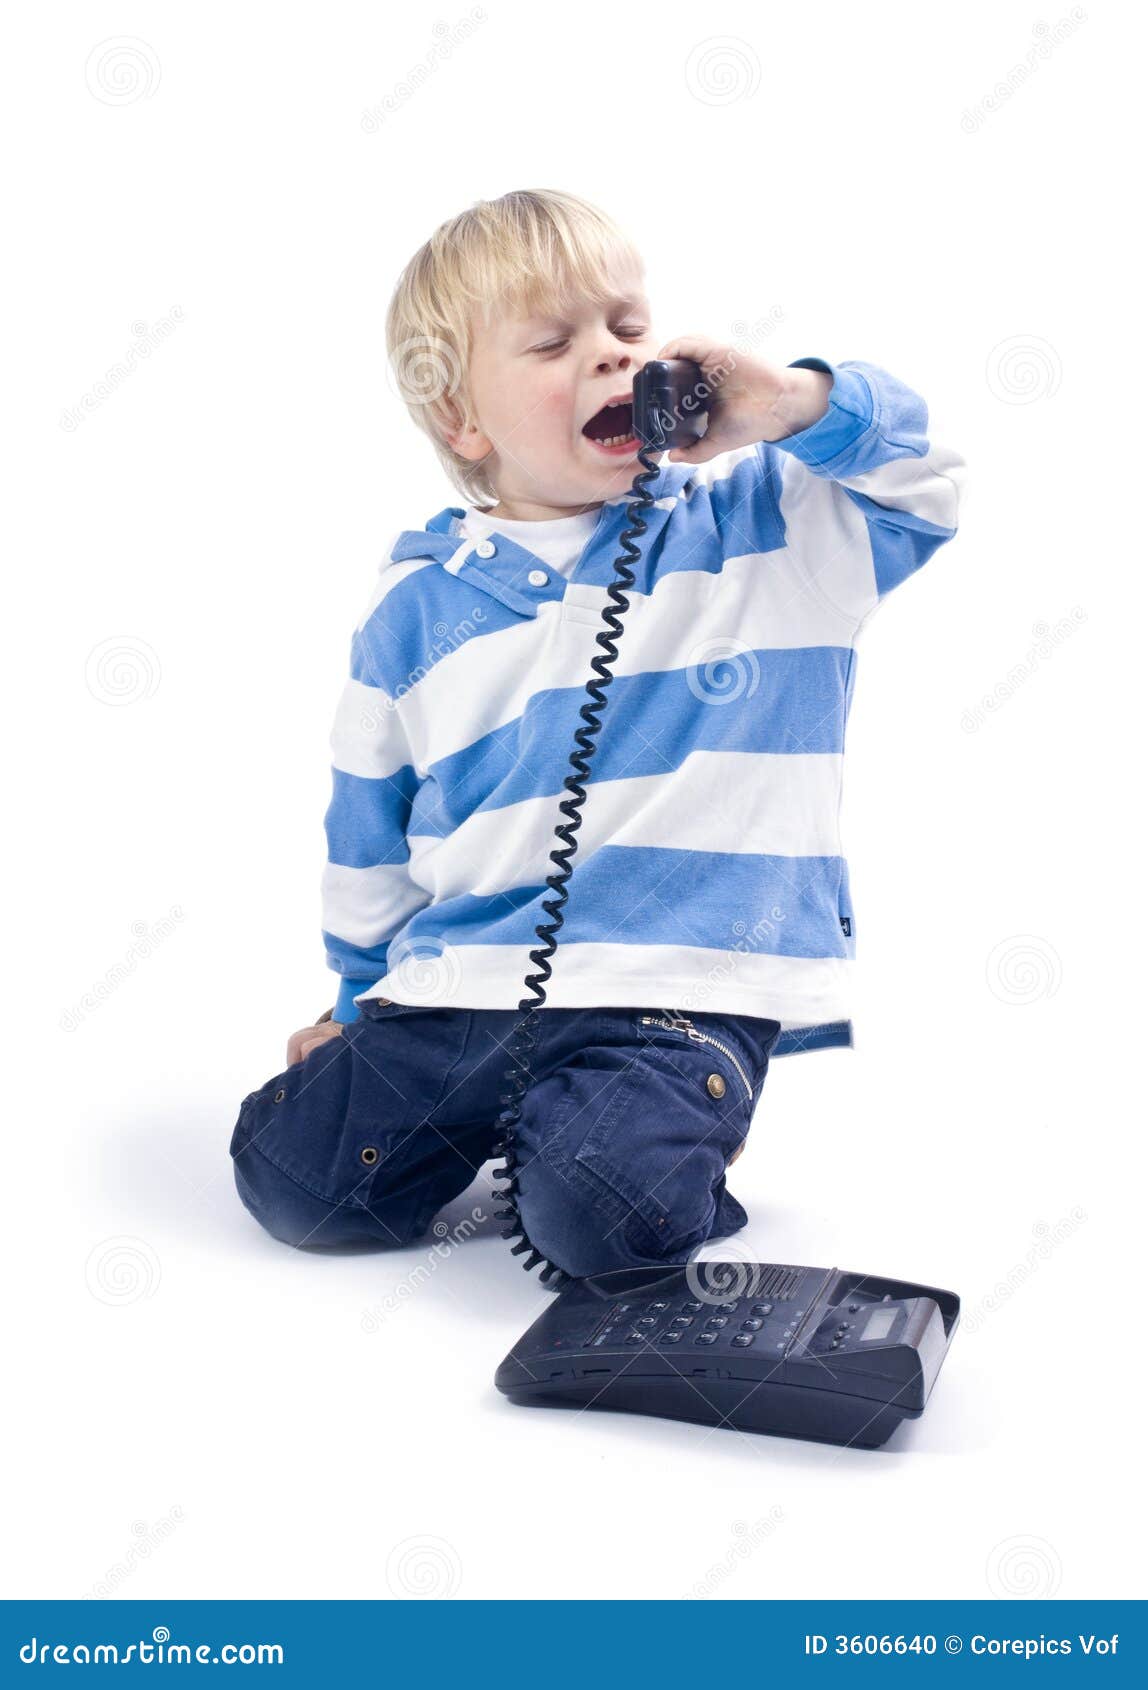 Включи телефон мальчик. Мальчик с телефоном. Мальчик с телефоном фот. Маленький мальчик с телефоном. Мальчик говорит по телефону.